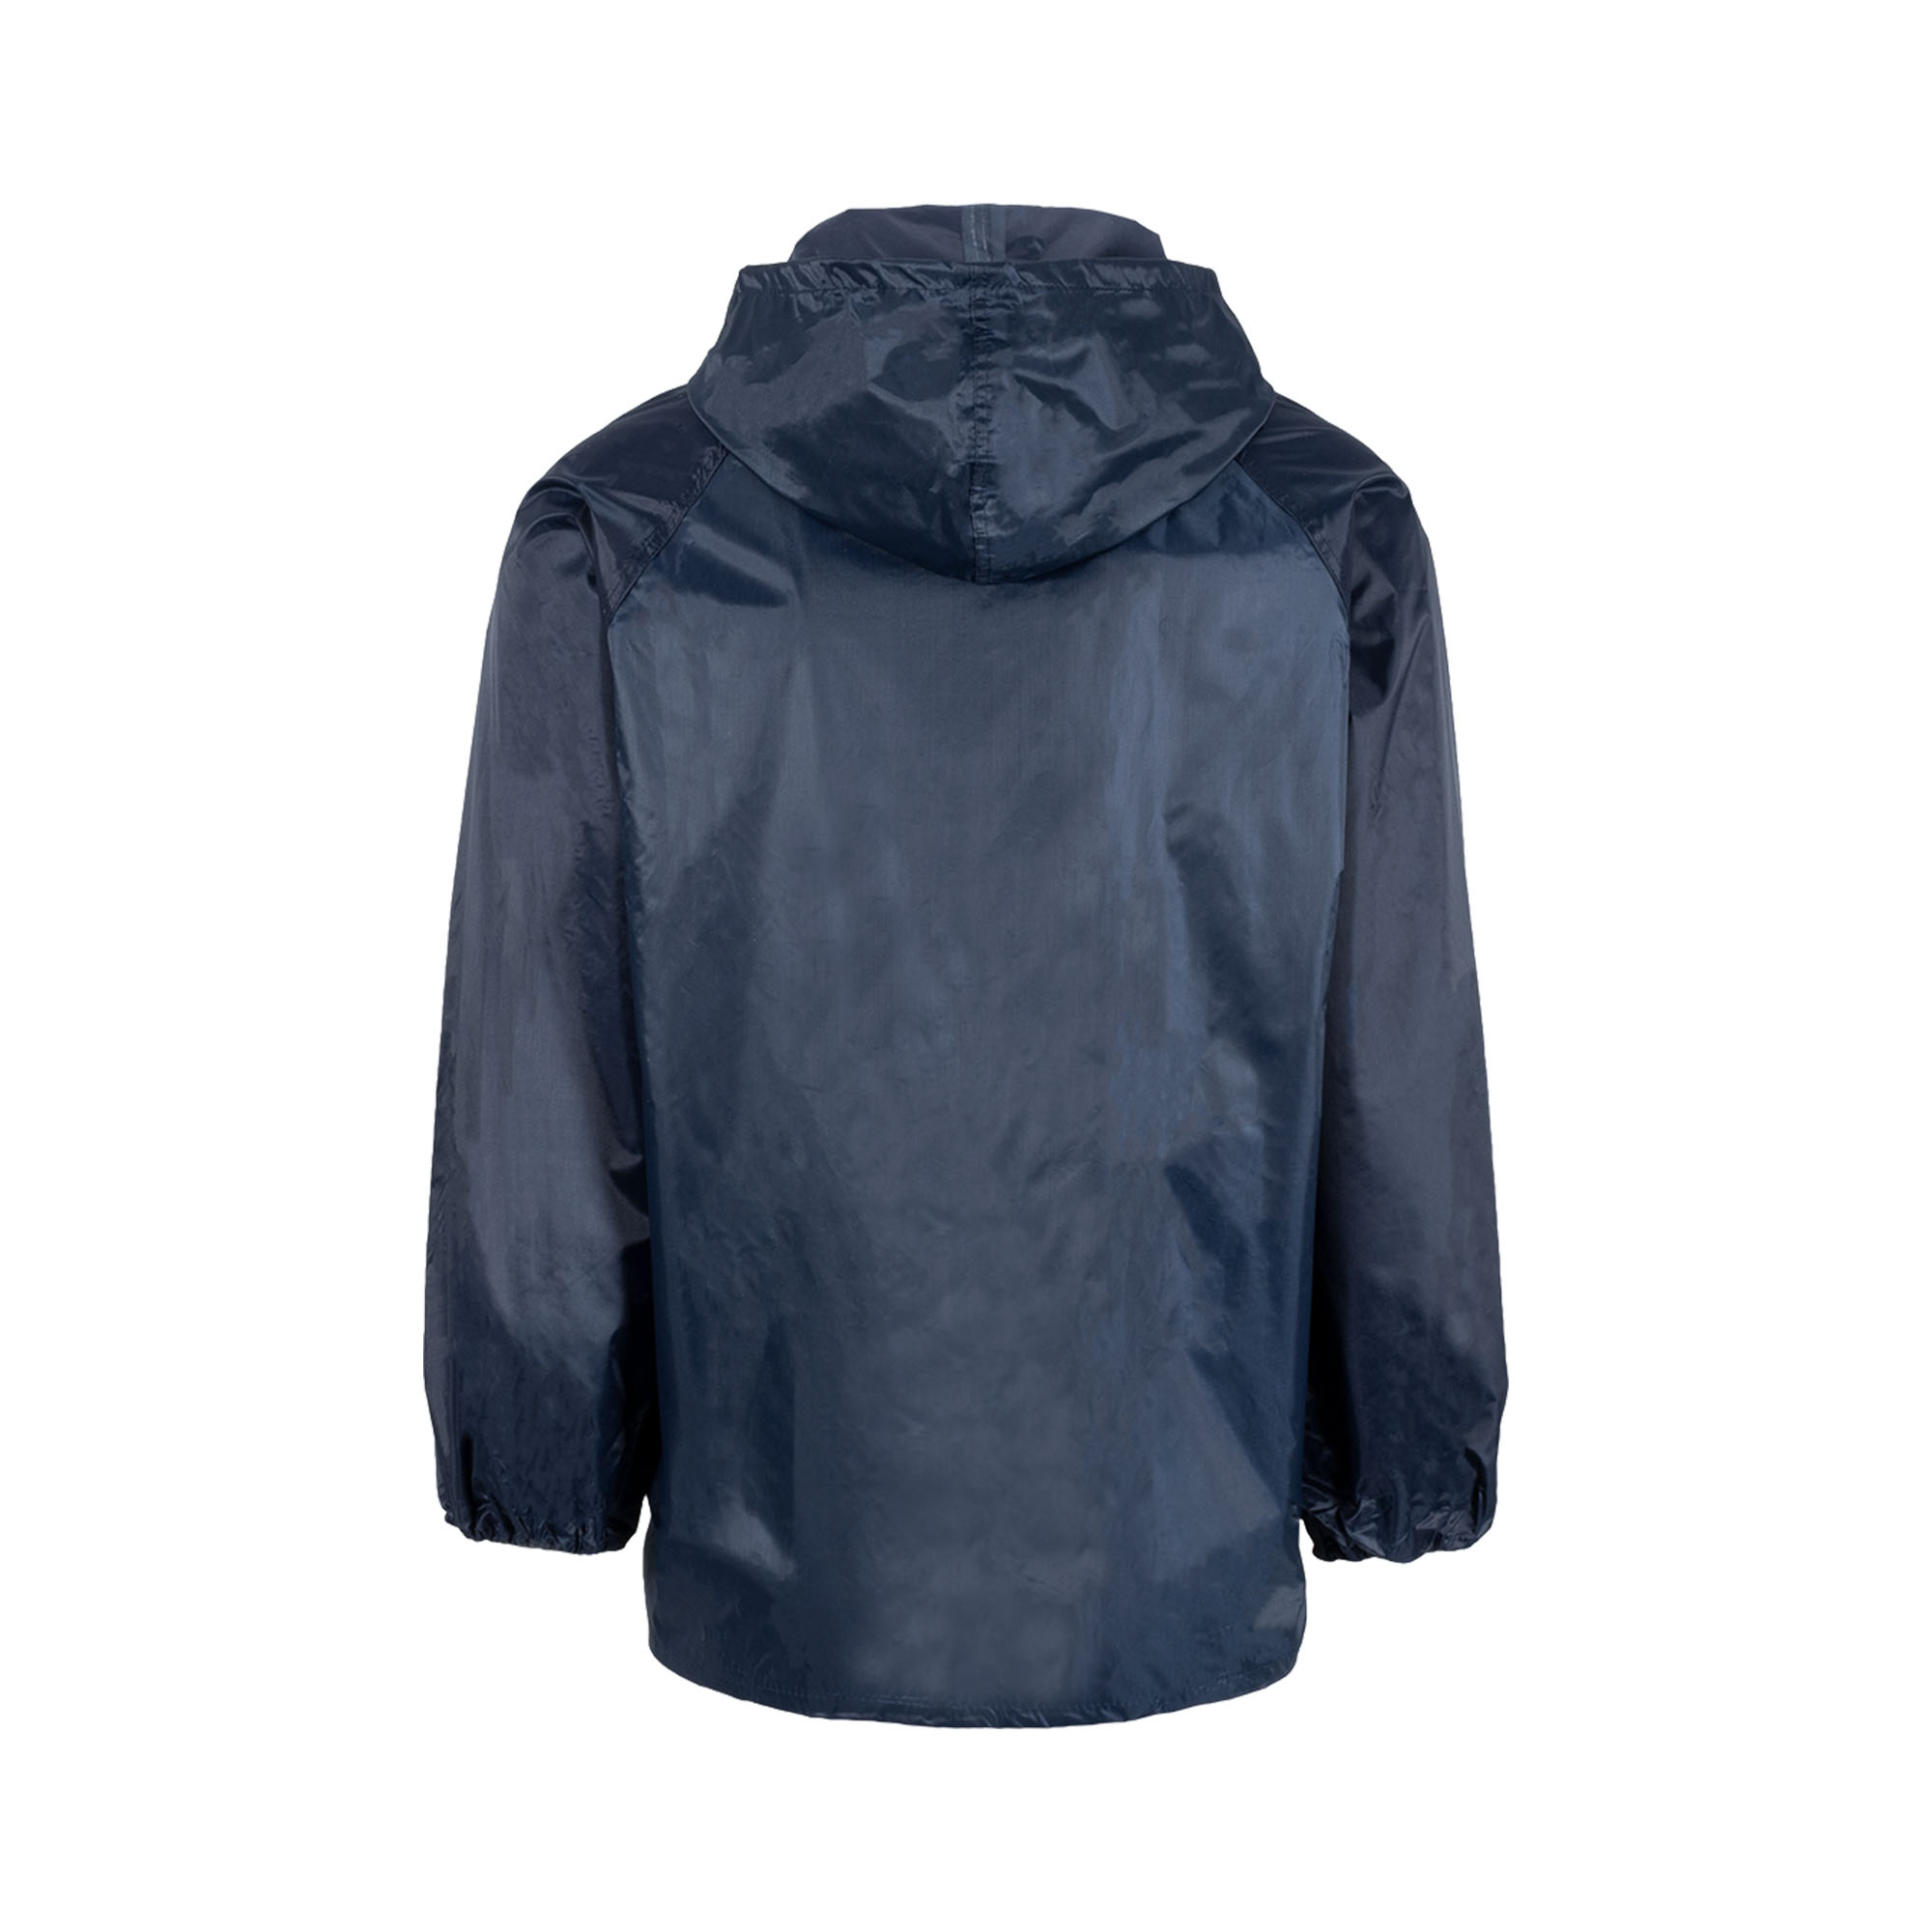 Graft Gear Navy Blue Waterproof Rain Suit Jacket Trouser Hooded Rain Wear Set 